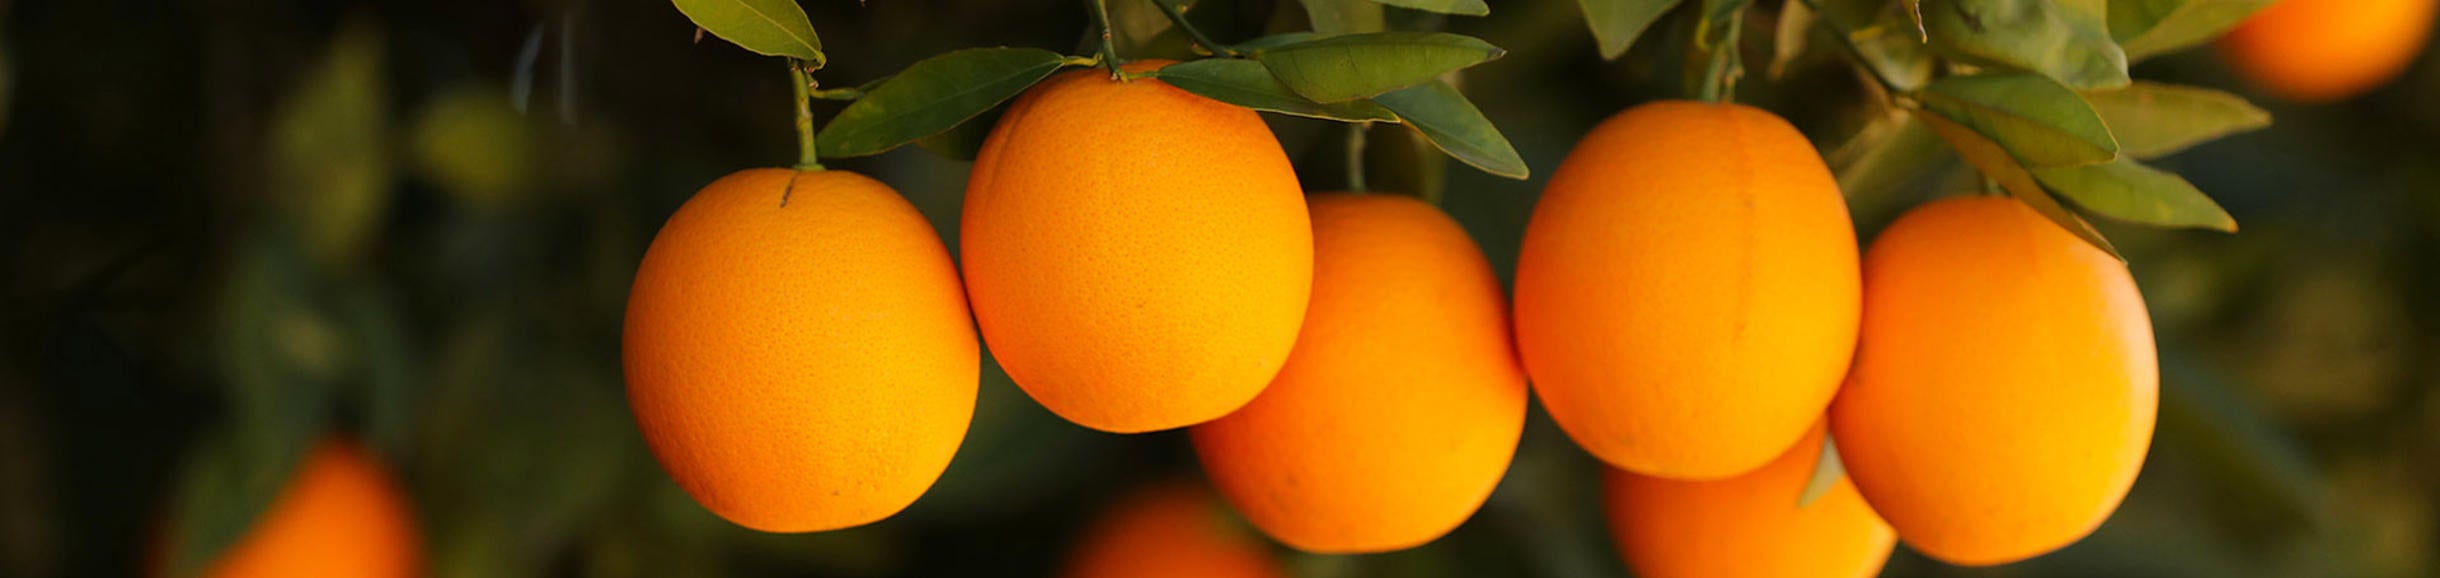 Oranges (c) UCR / Stan Lim